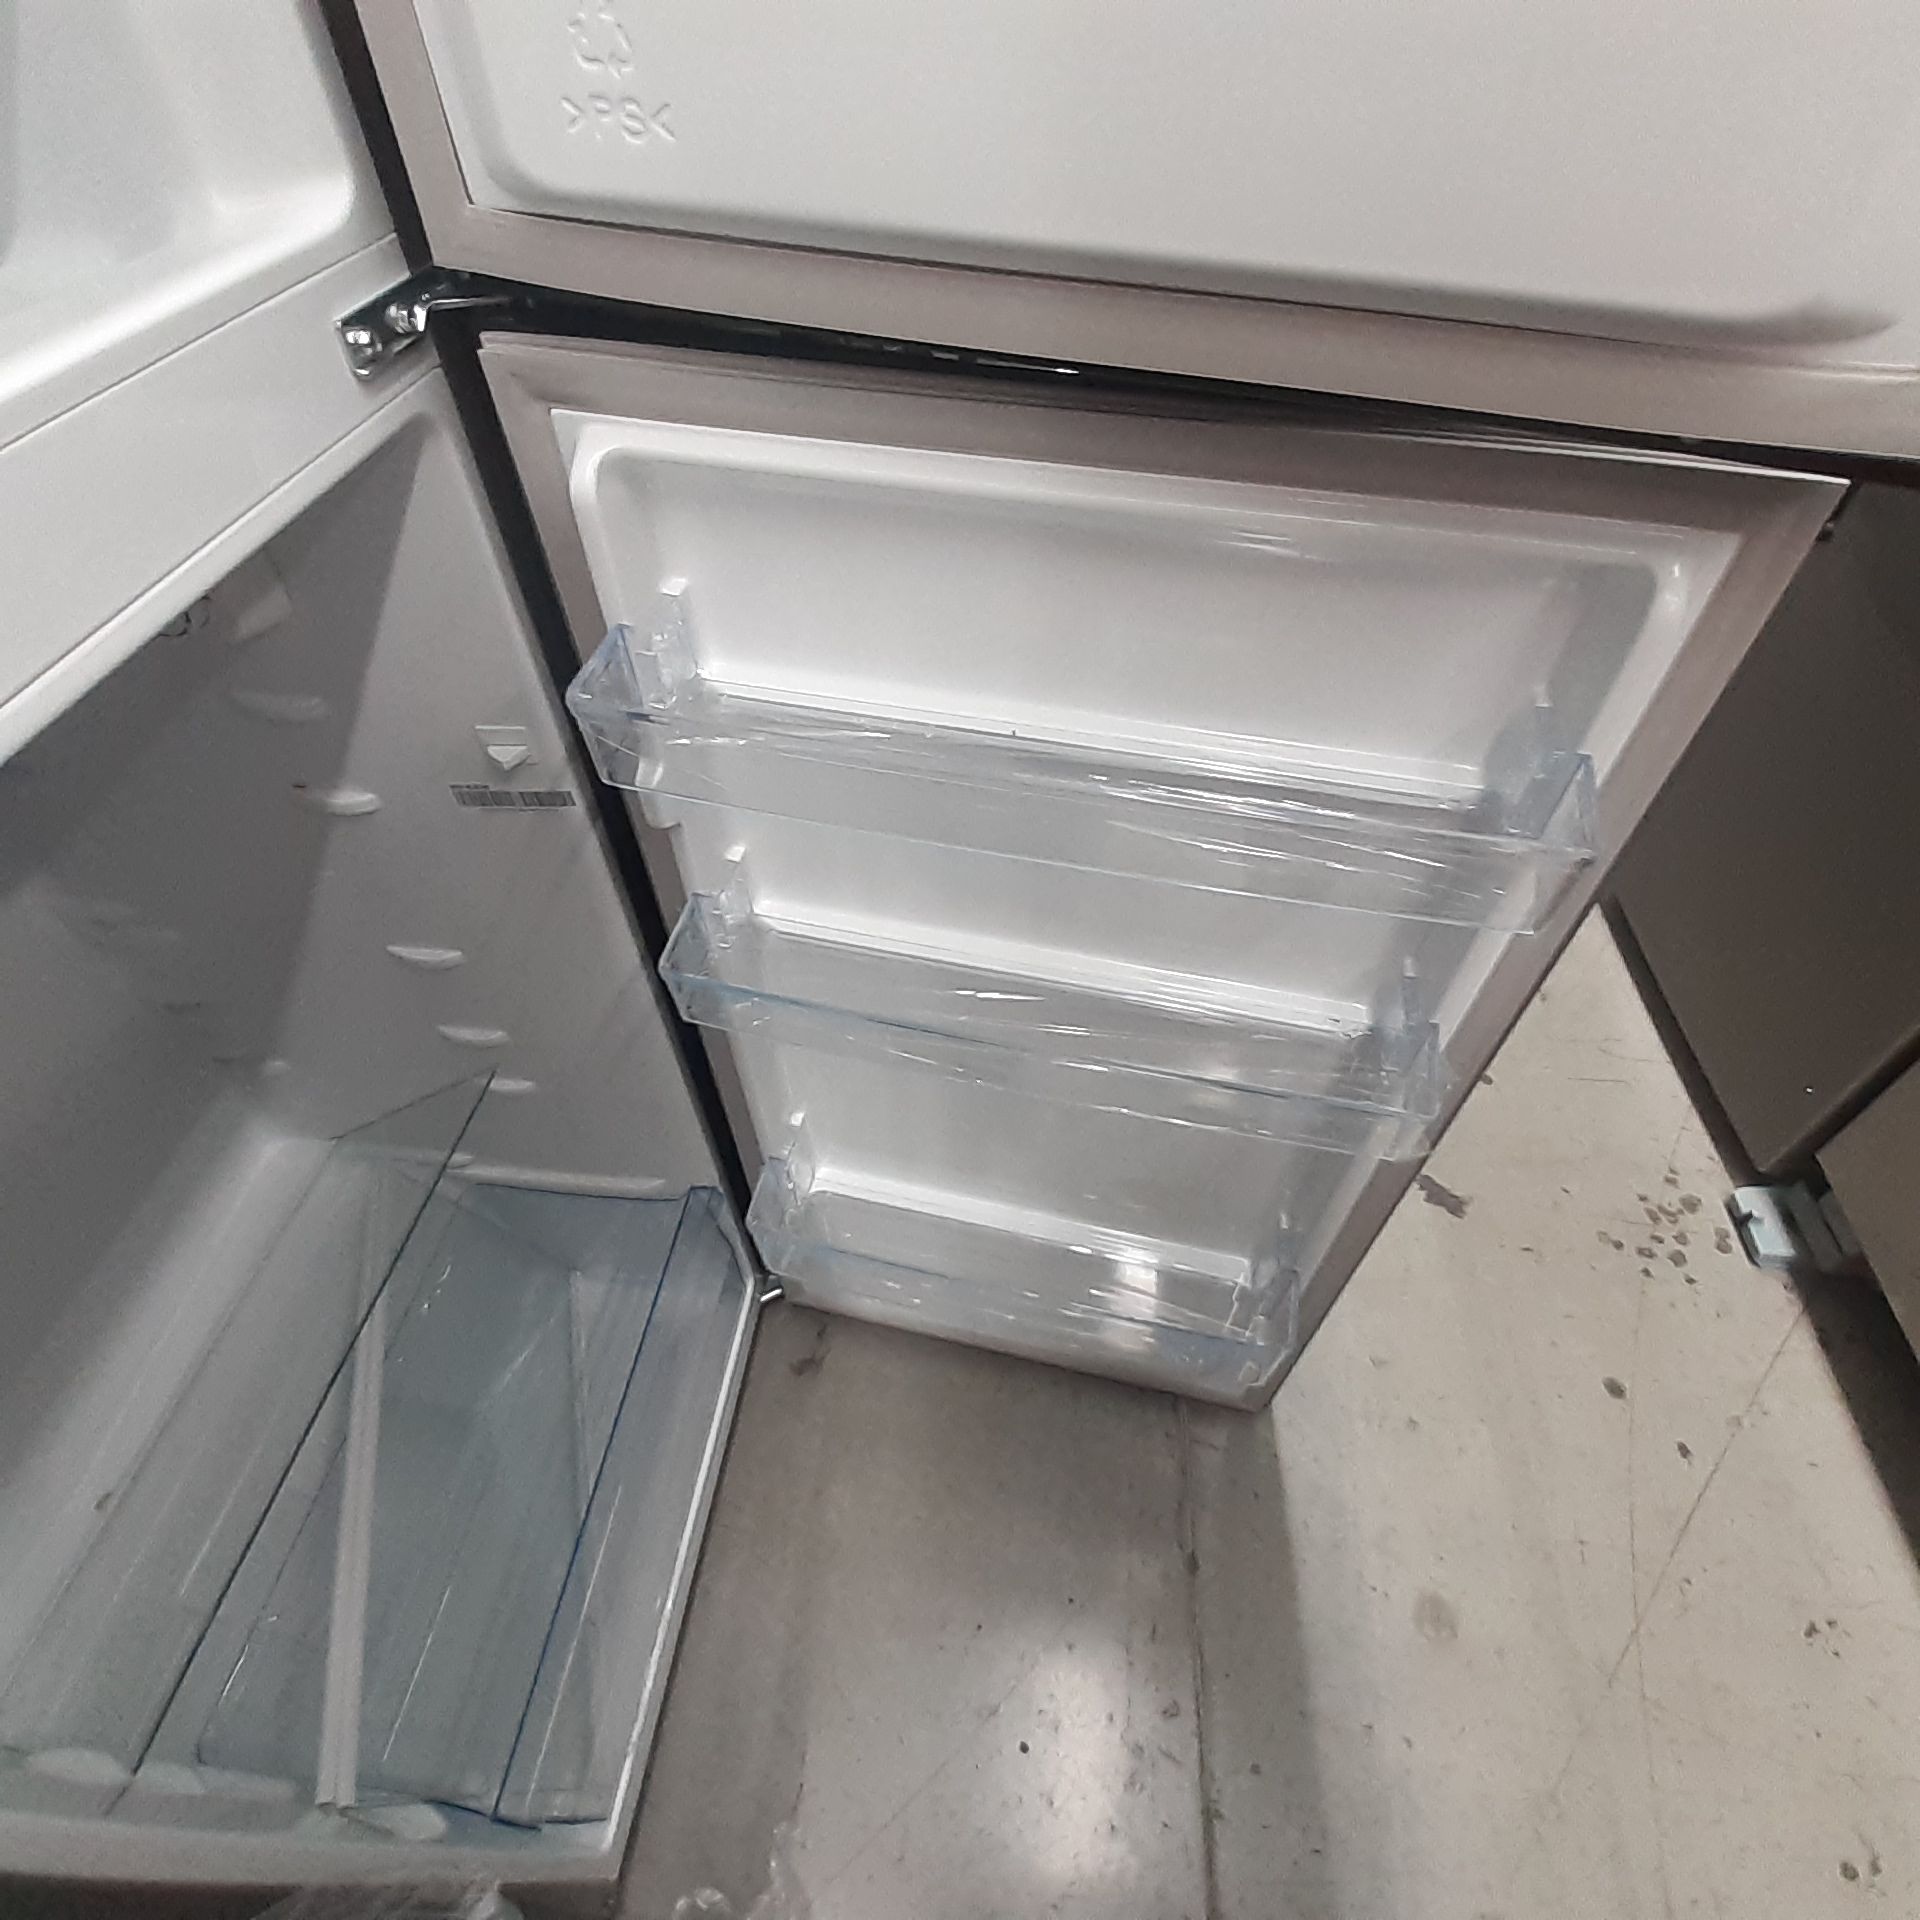 Lote De 2 Refrigeradores: 1 Refrigerador Con Dispensador De Agua Marca Samsung, 1 Refrigerador Marca - Image 17 of 18